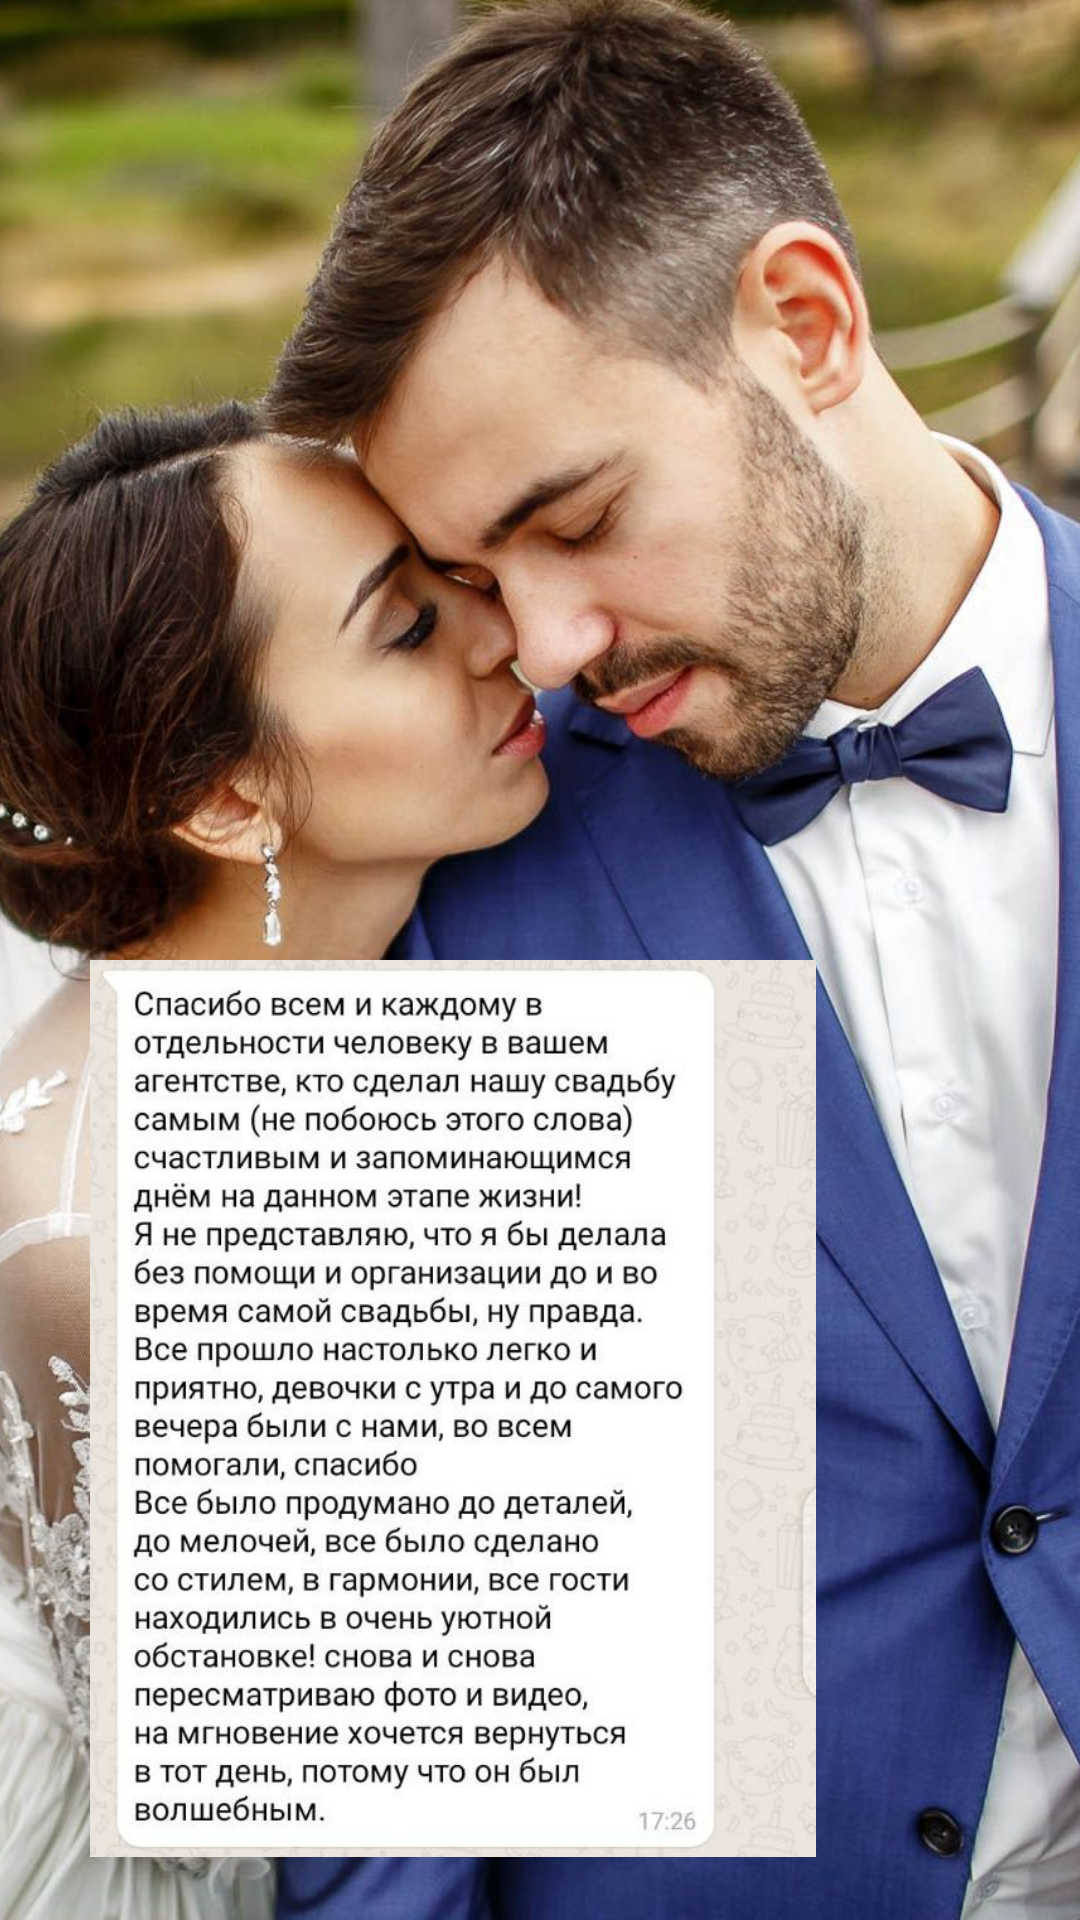 Организация свадьбы в Перми
от компании Pandaevent